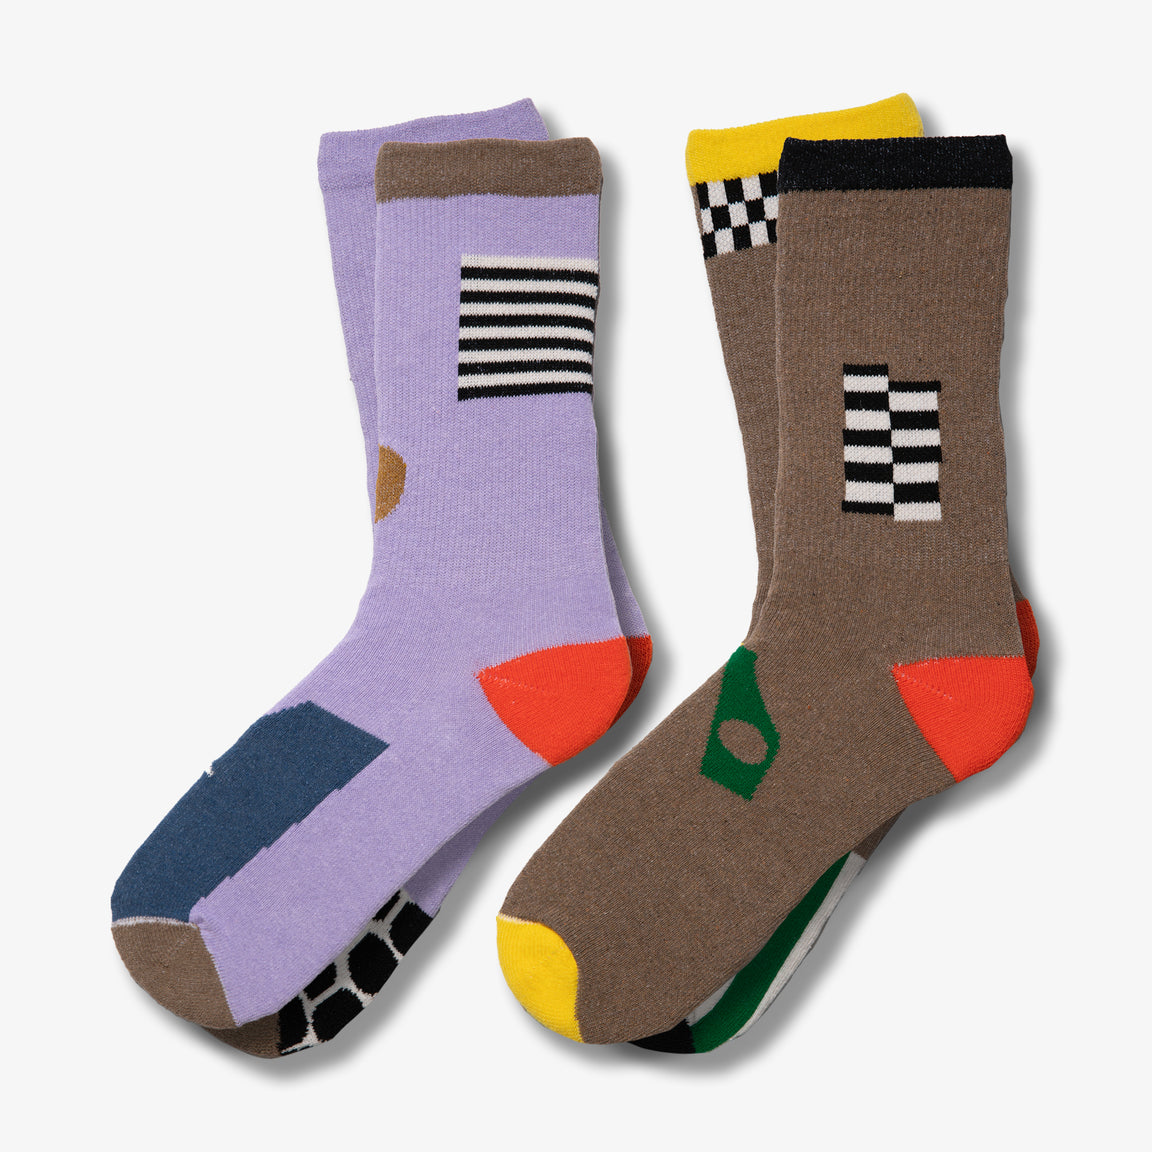 American Made Socks for Women - Hippy Feet